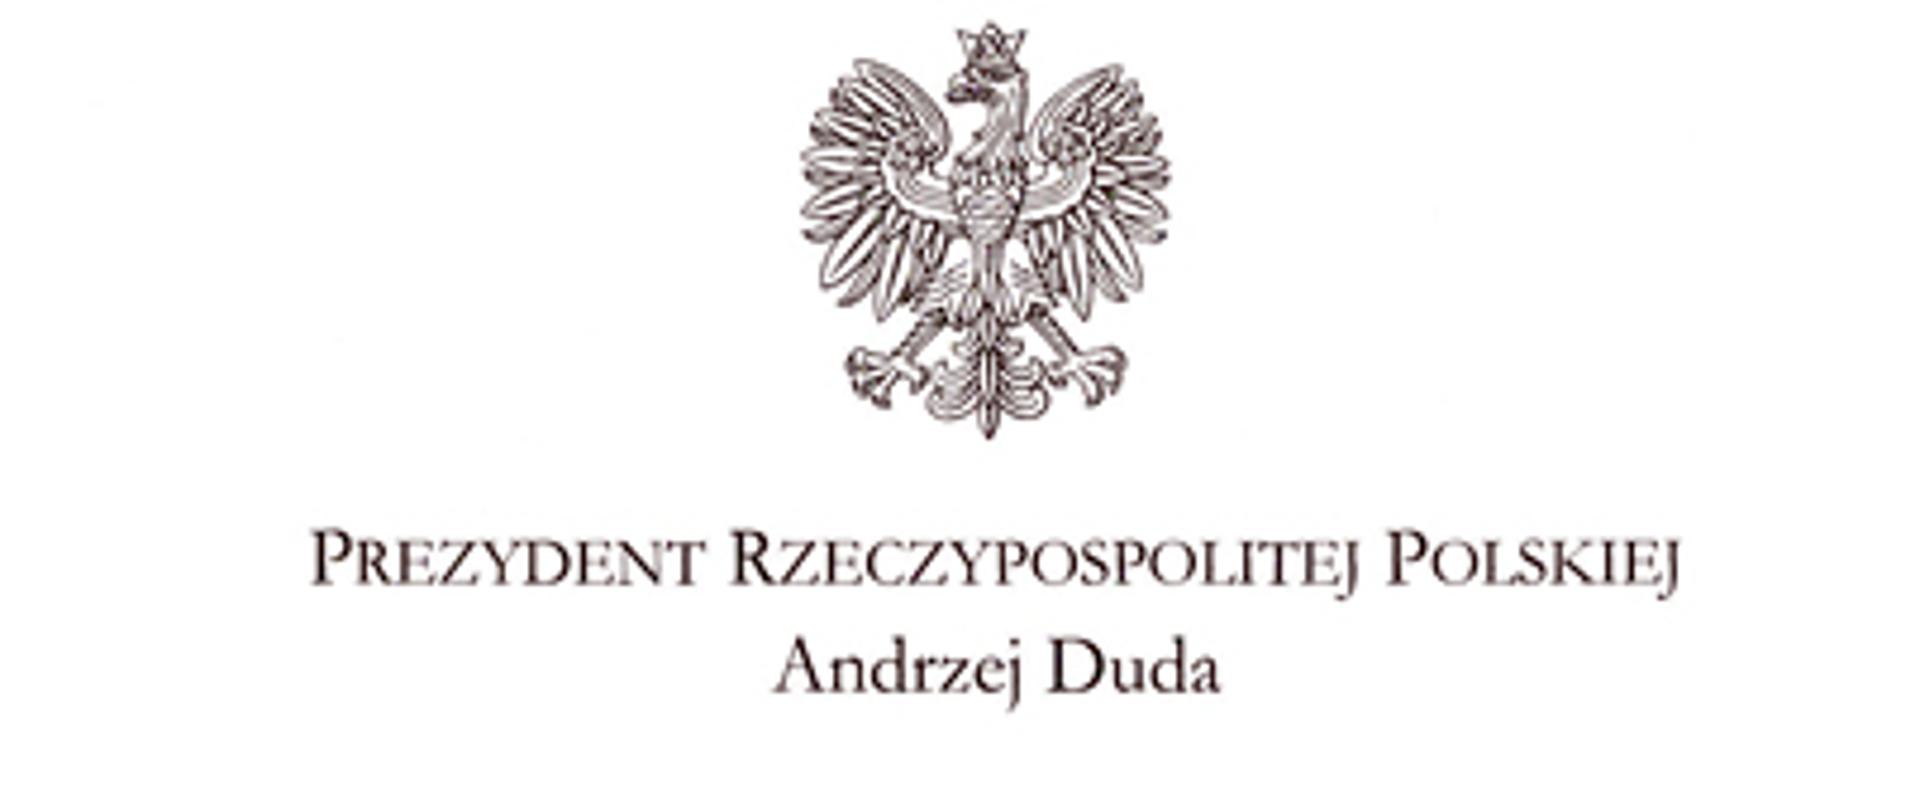 Zdjęcie przedstawia życzenia Świąteczne od Prezydenta Rzeczypospolitej Polskiej dla PSP i OSP. W prawym dolnym rogu widoczny jest podpis Prezydenta RP Andrzeja Dudy.